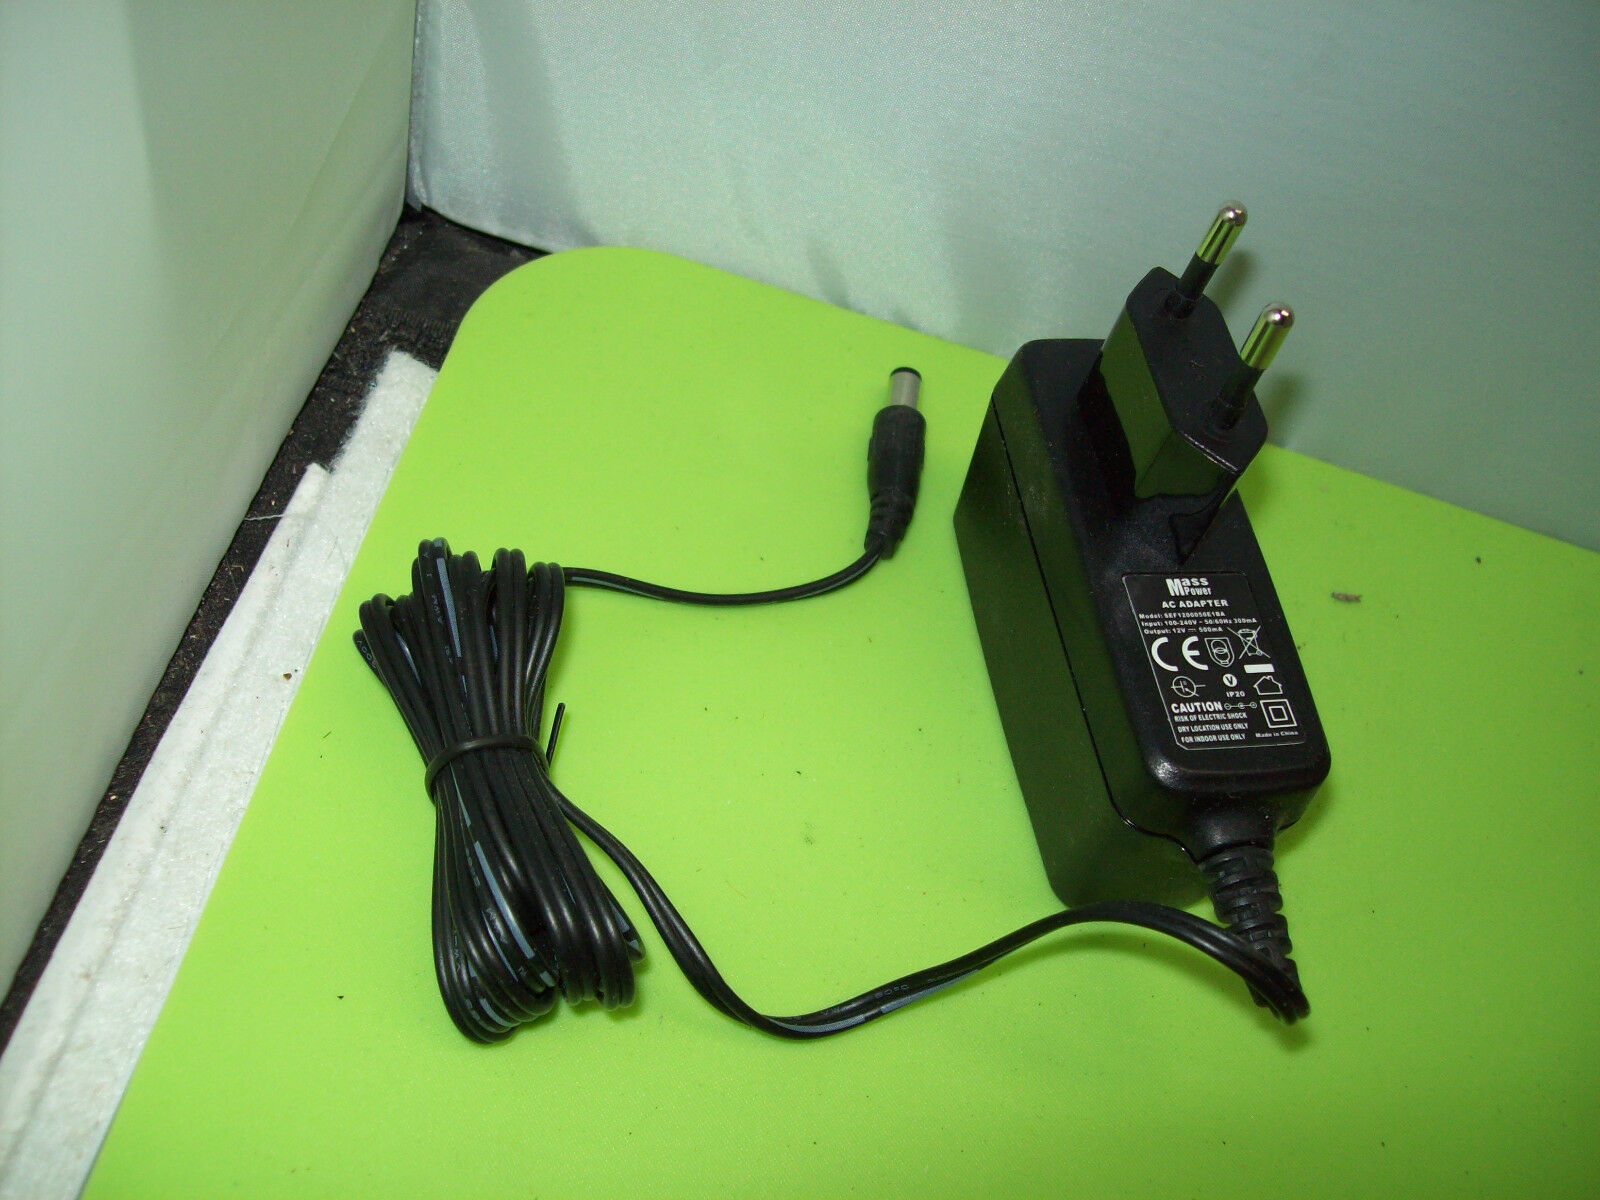 Original Power Supply AC Adapter Mass Power sef1200050e1ba 12v Marke: mass Herstellernummer: SEF1200050E1BA Produkt